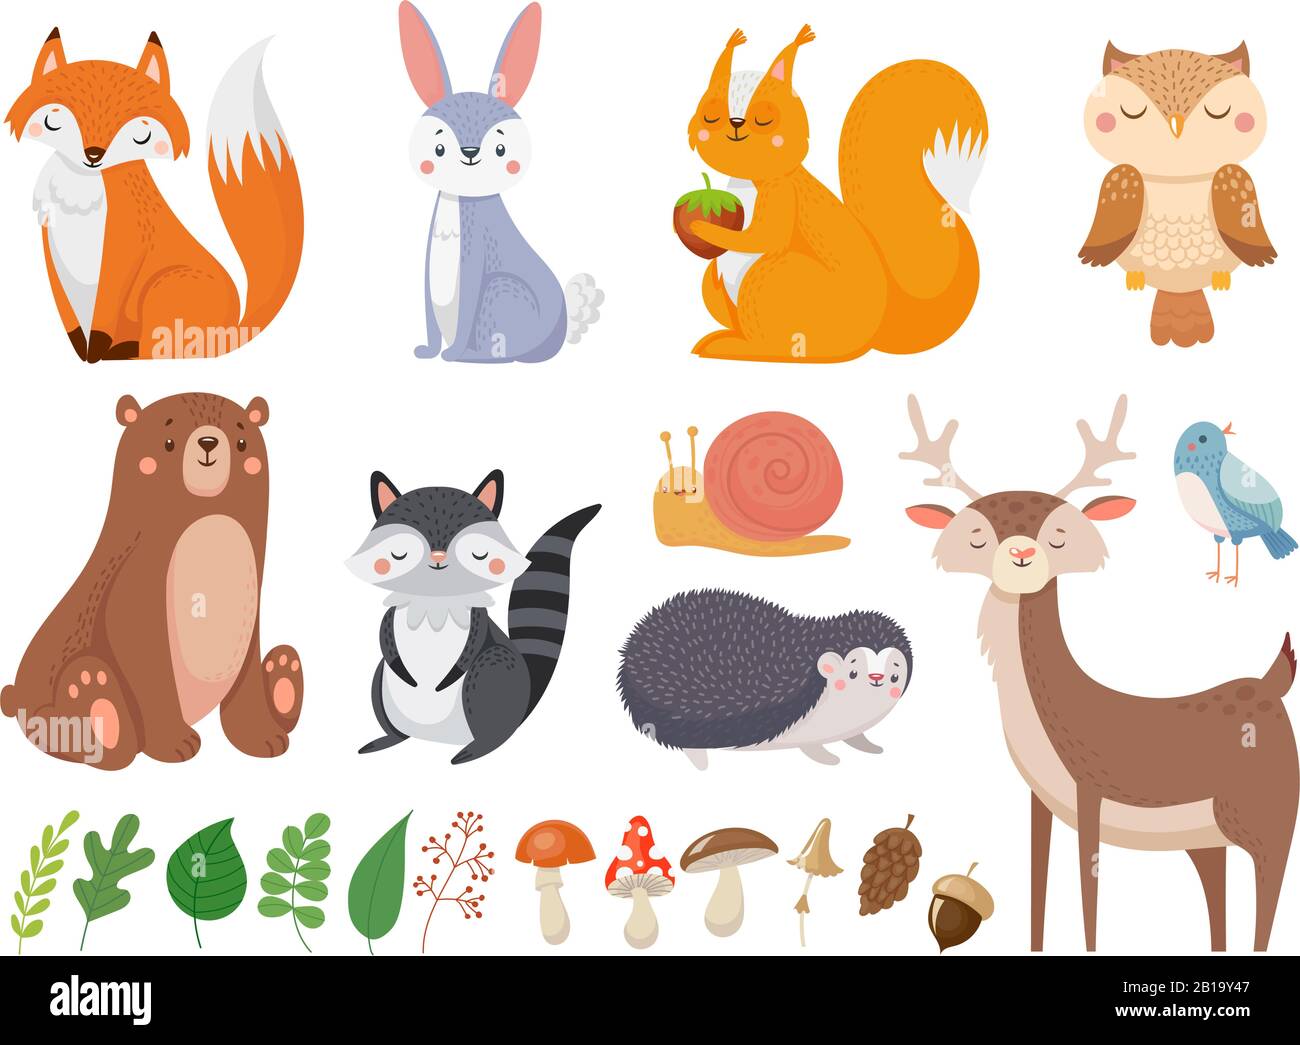 Süße Waldtiere. Wilde Tier-, Wald- und Tierwelt Elemente isolierte Cartoon-Vektor-Illustration Set Stock Vektor